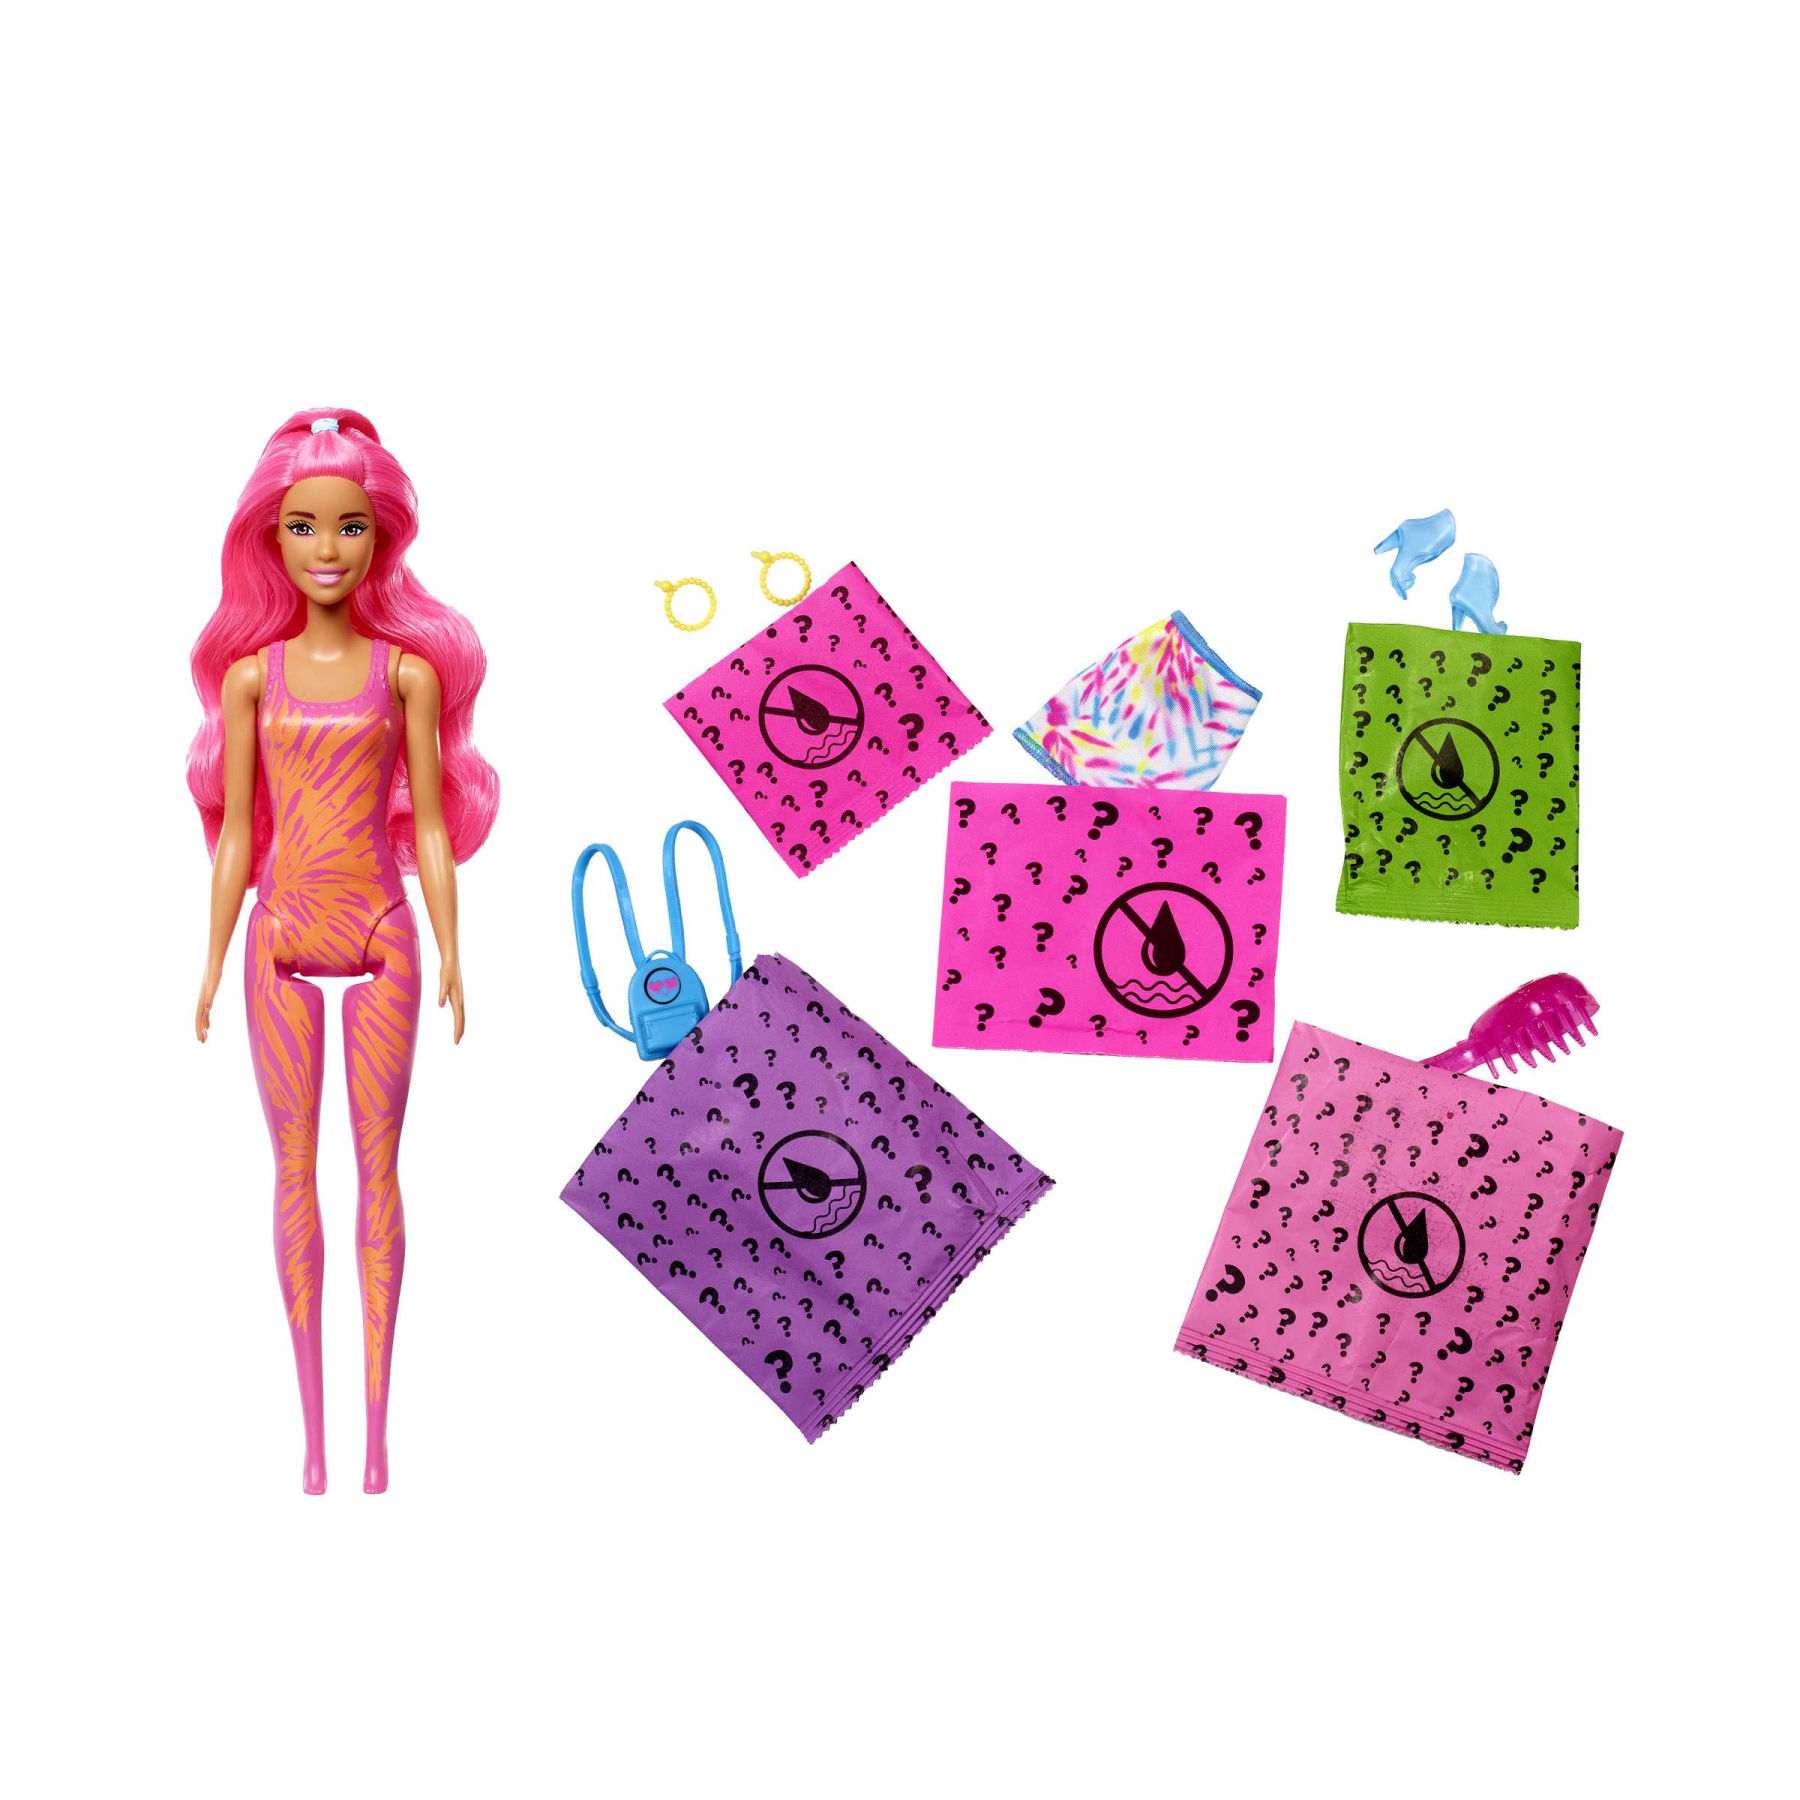 Barbie - color reveal serie fluo, bambola con 7 sorprese ed effetto cambia colore; giocattolo per bambini 3+ anni - Barbie